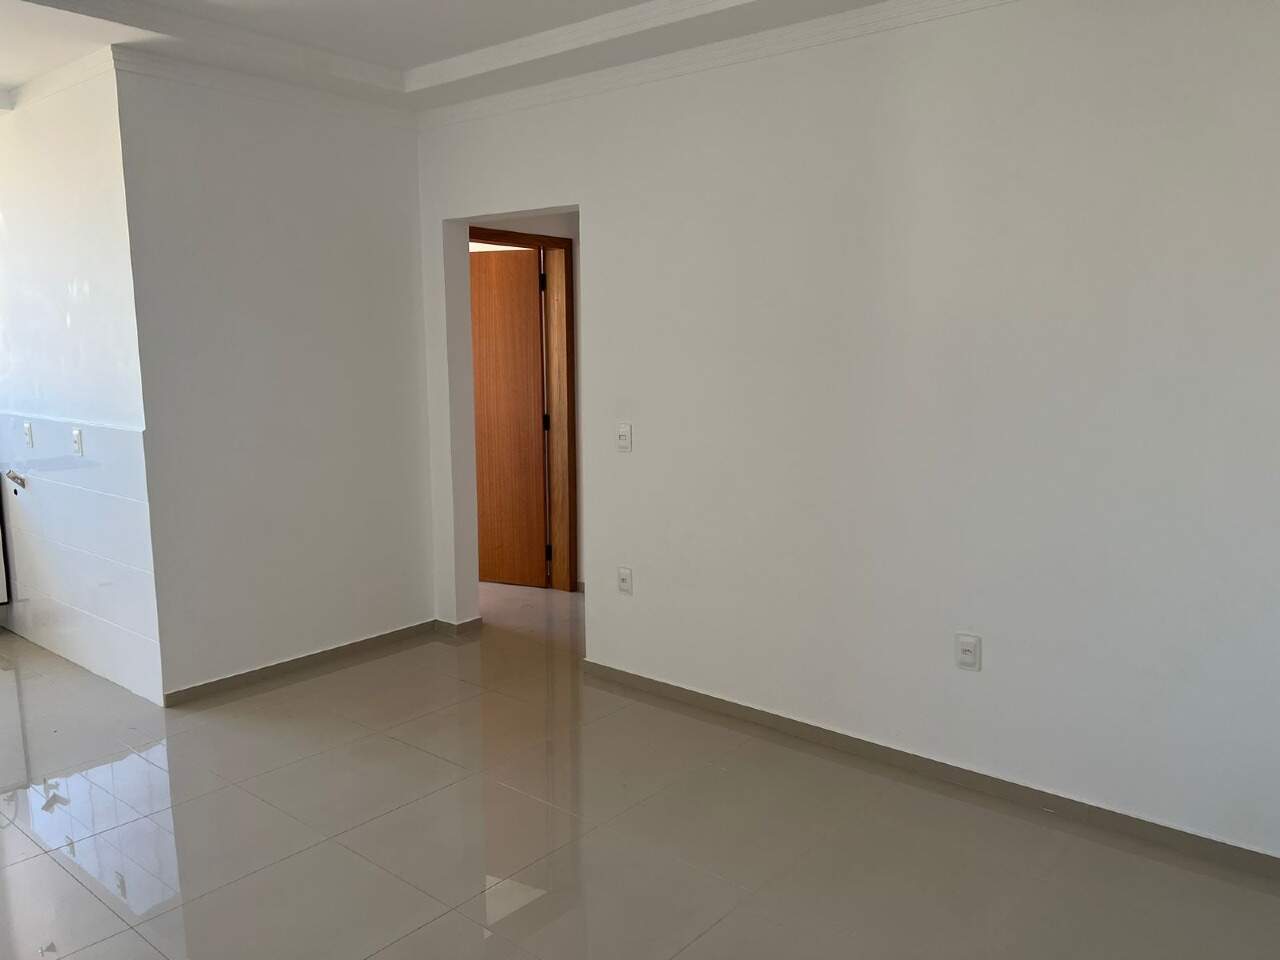 Apartamento, 3 quartos, 70 m² - Foto 4